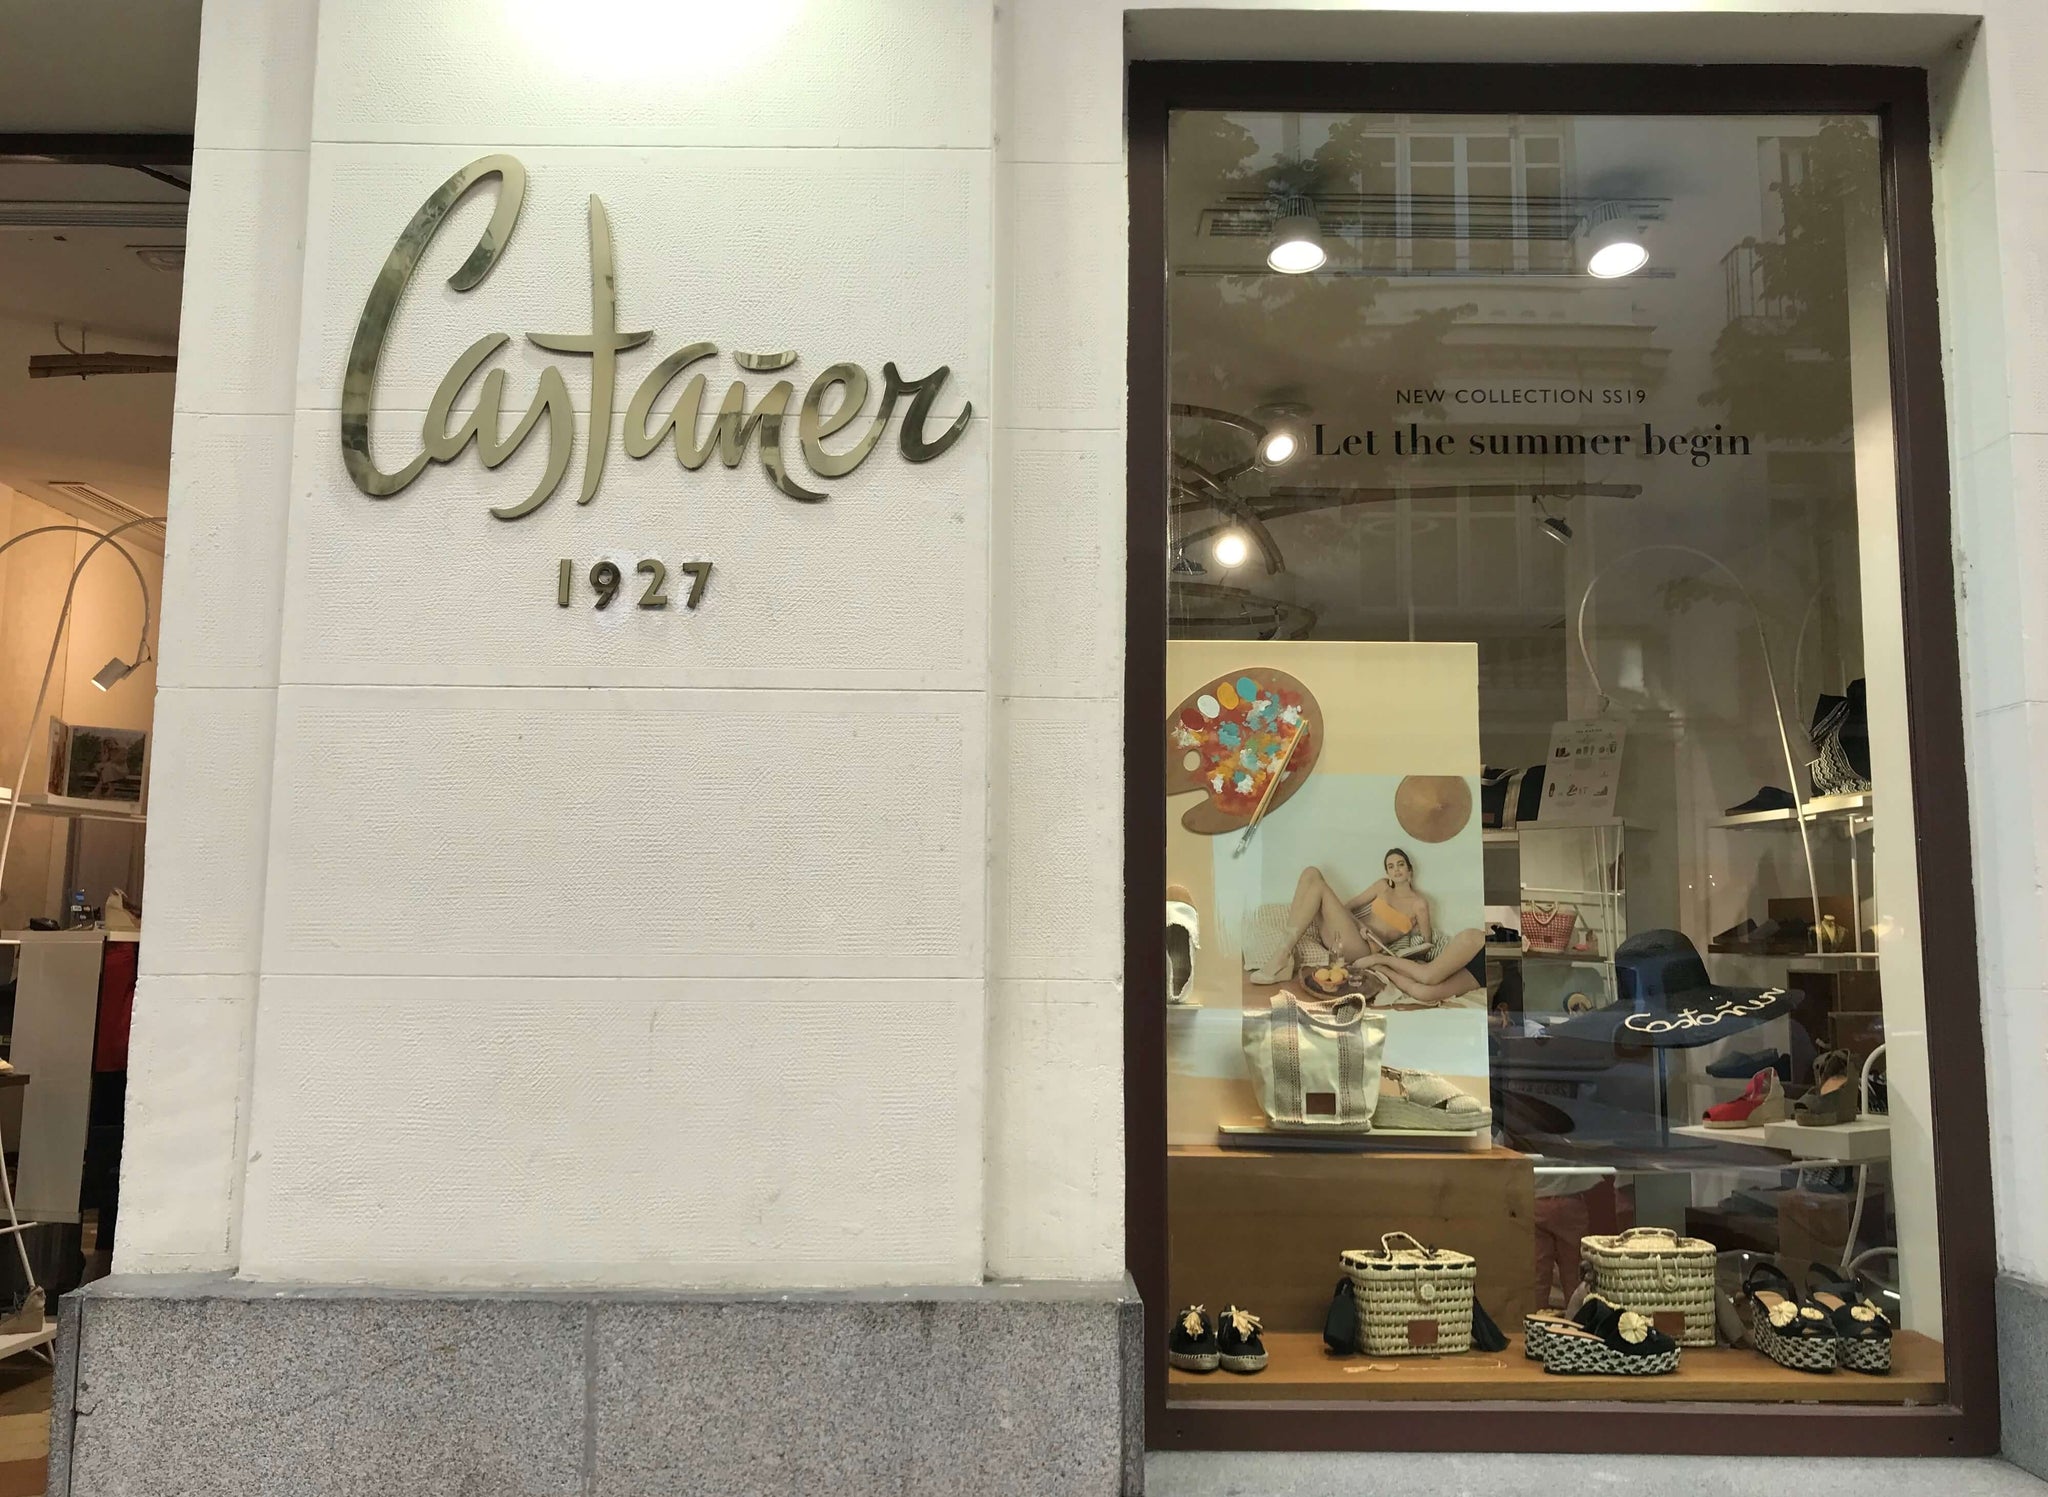 Totte | スペインの老舗エスパドリーユ店『Castañer』（カスタニエール）